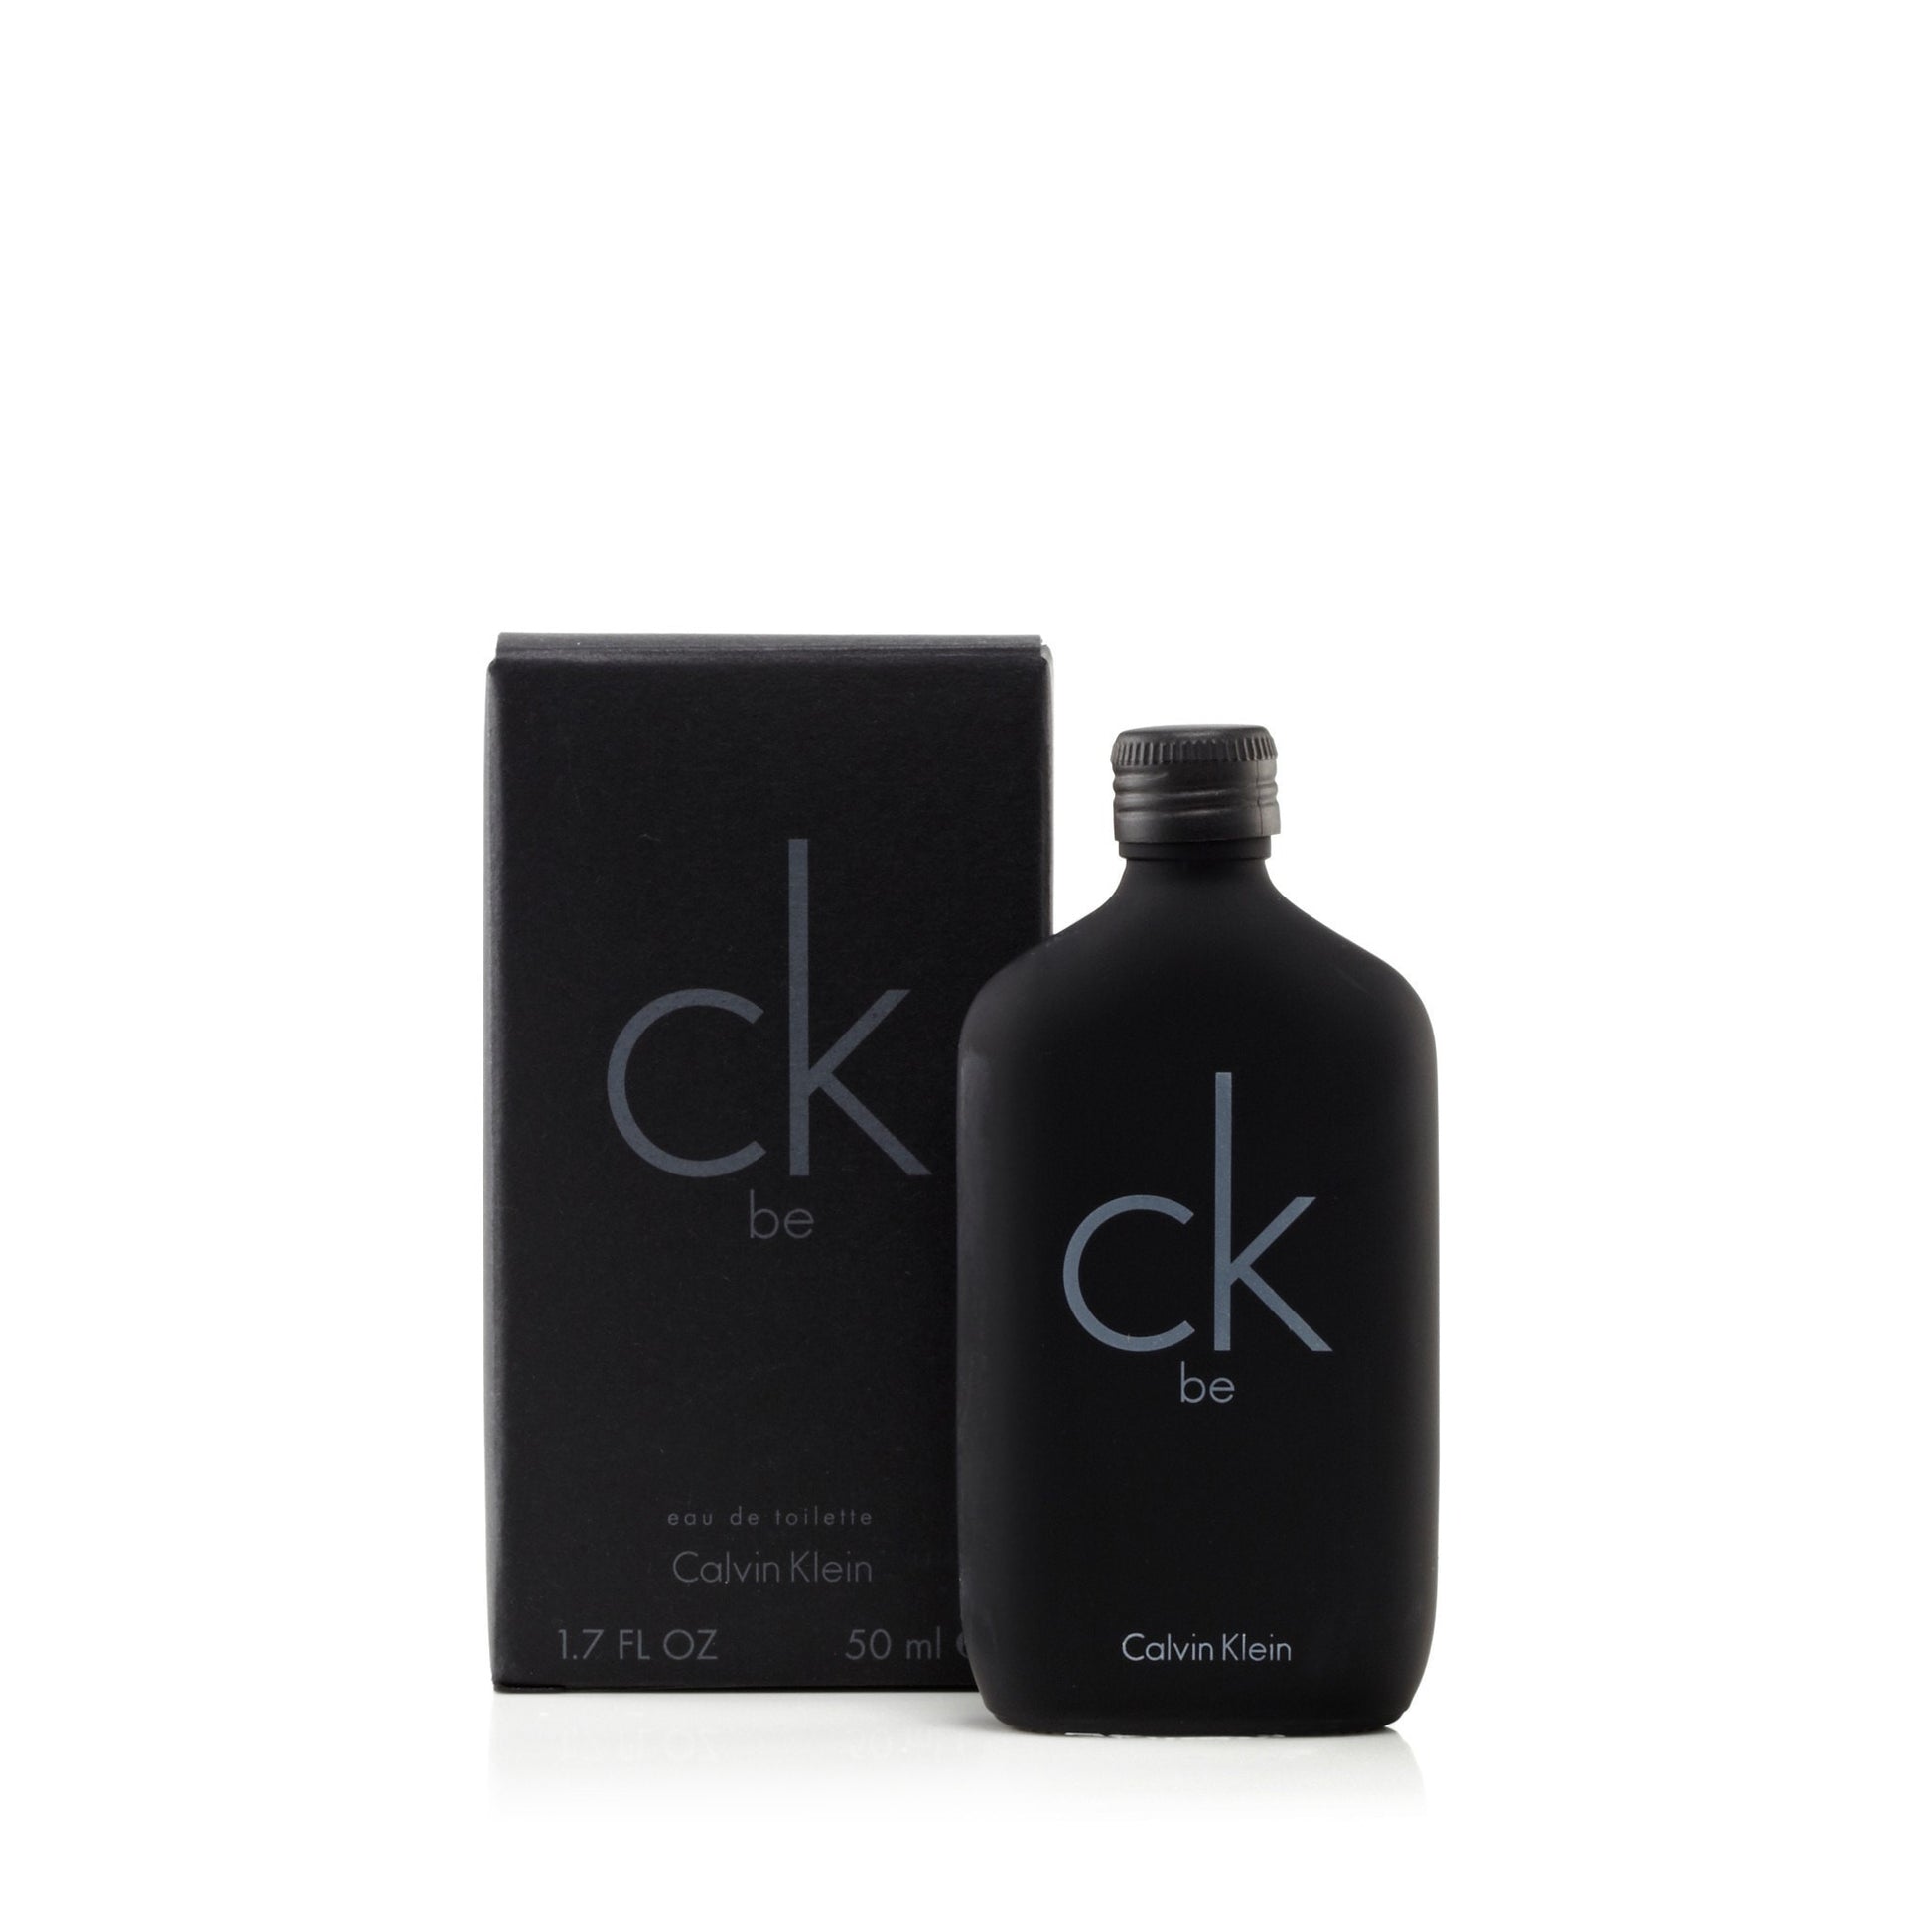 Be Eau de Toilette Spray for Men by Calvin Klein 1.7 oz. Click to open in modal